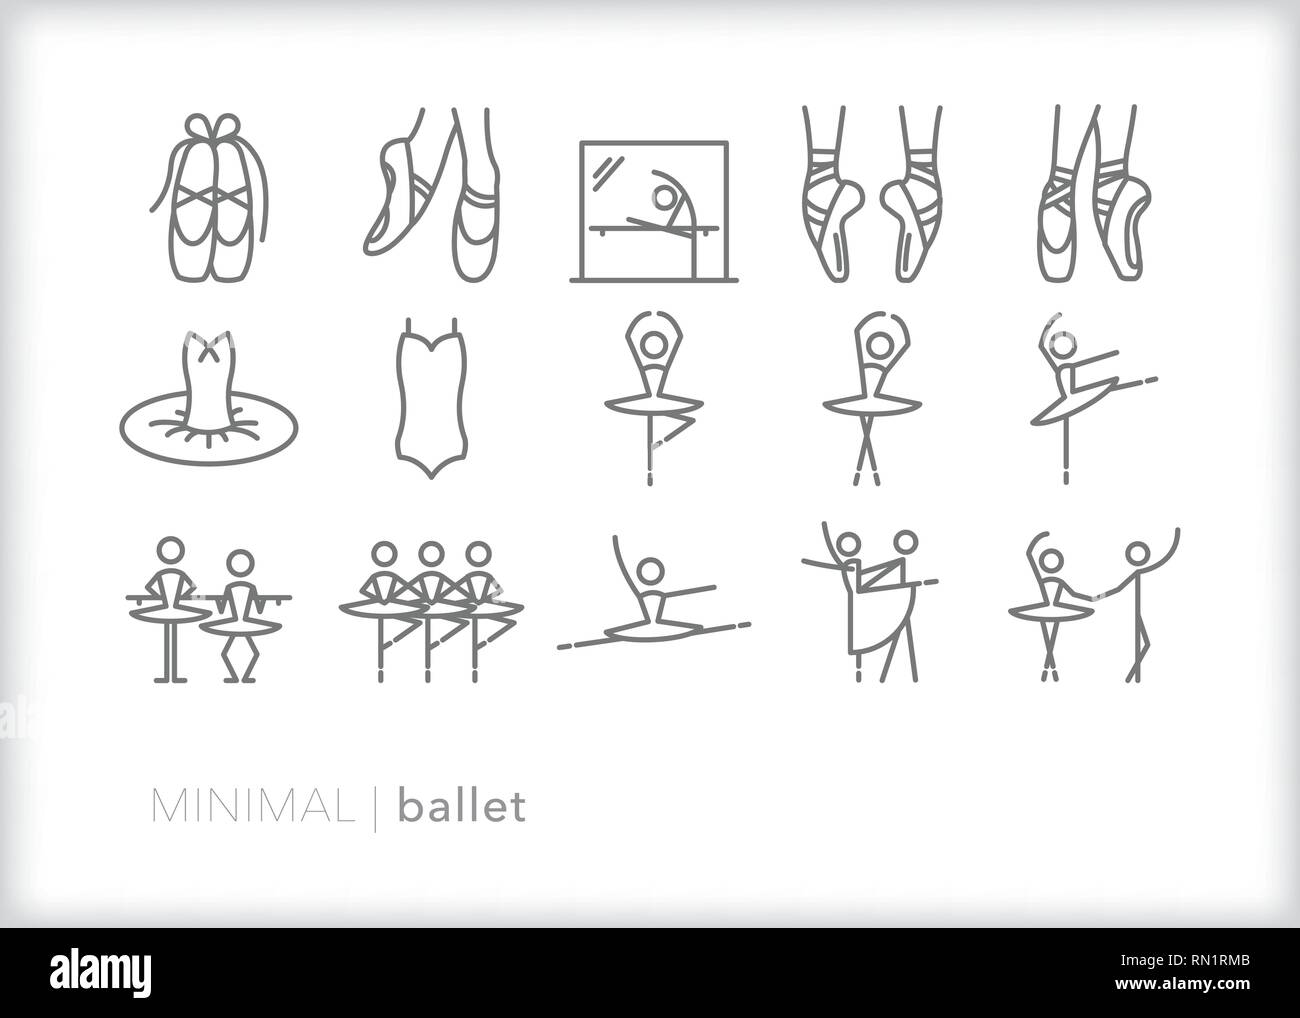 Satz von 15 grau Ballett Ikonen der Tänzerin, Tänzer, Tutu, Ballet Shoes, Positionen, Praxis und Leistung Stock Vektor